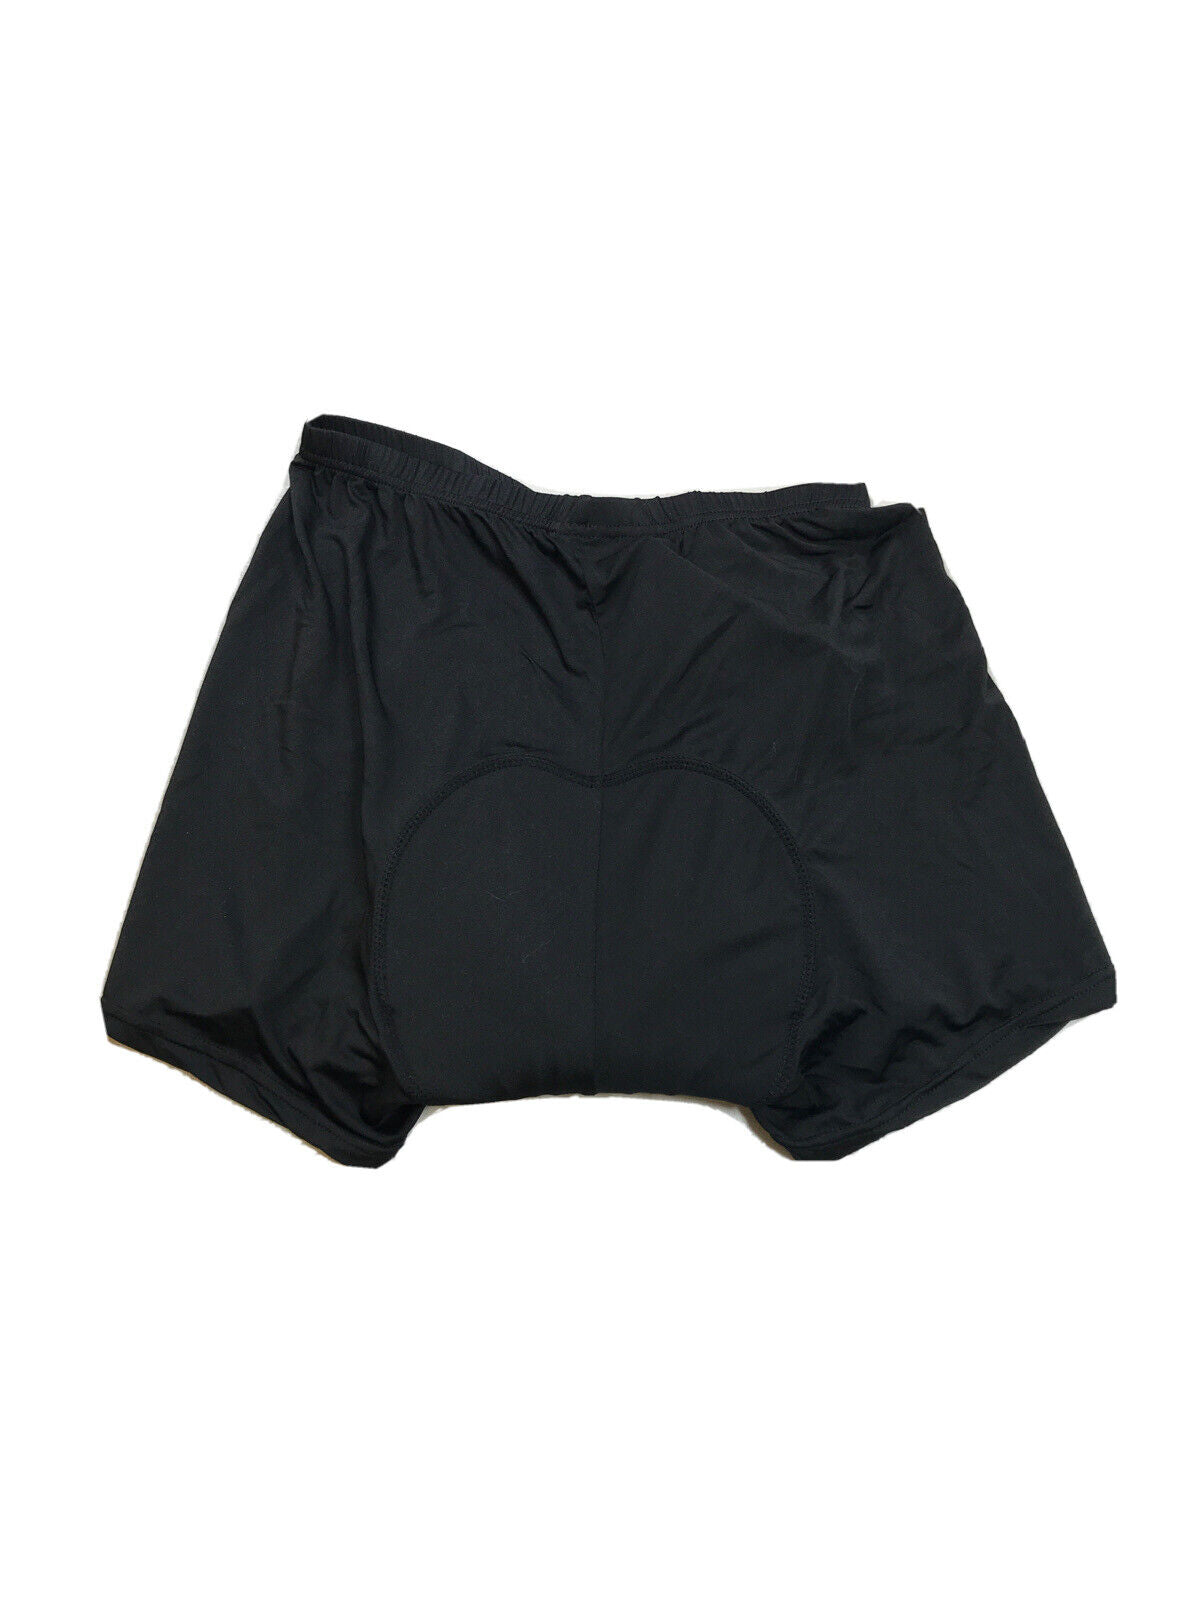 NUEVOS pantalones cortos de ciclismo ajustados y acolchados negros de Realtoo para mujer - L